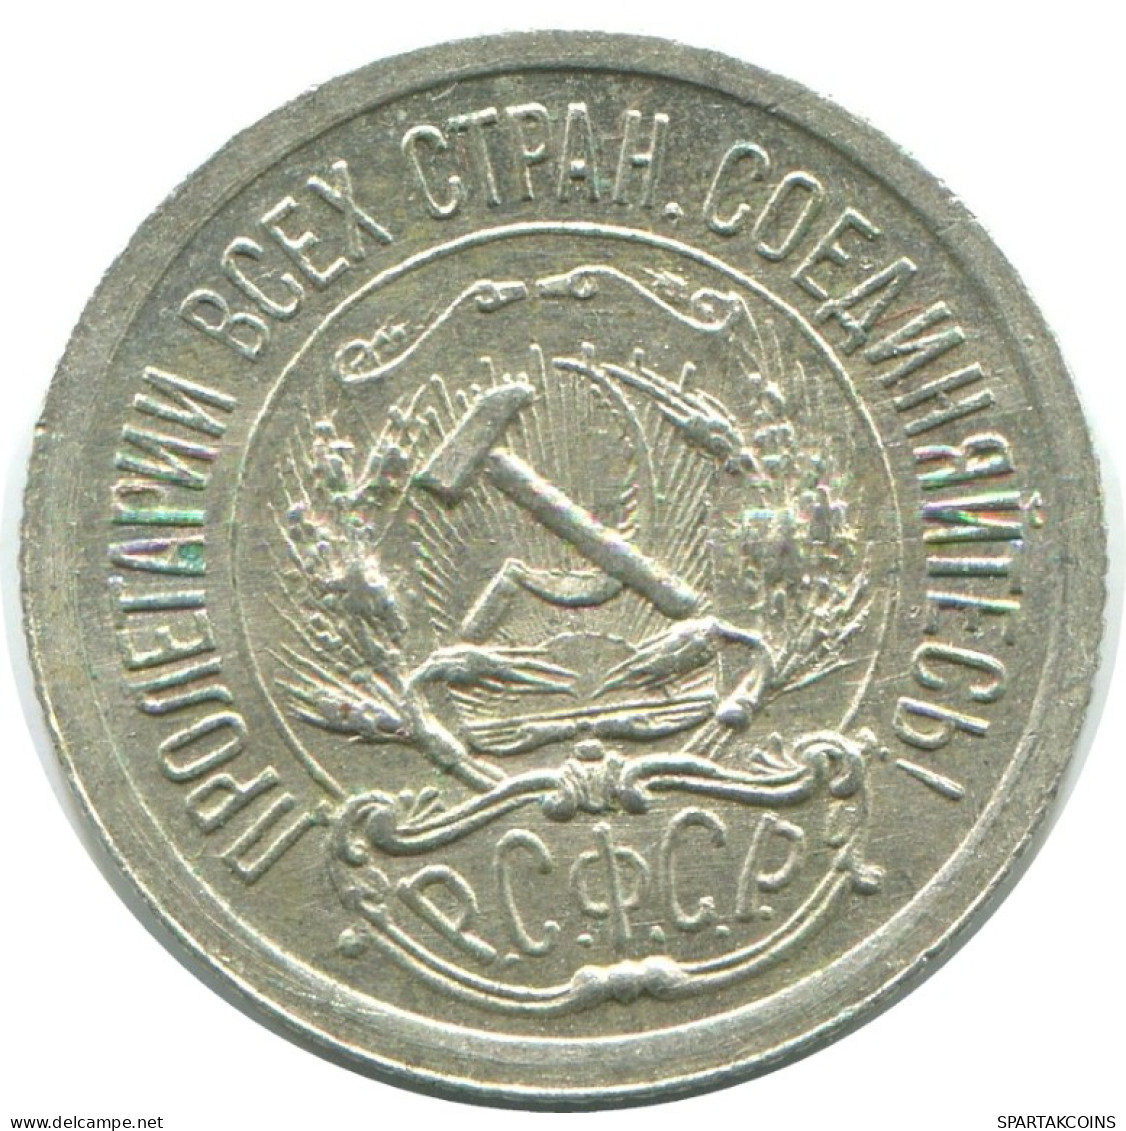 10 KOPEKS 1923 RUSSLAND RUSSIA RSFSR SILBER Münze HIGH GRADE #AE964.4.D.A - Russia